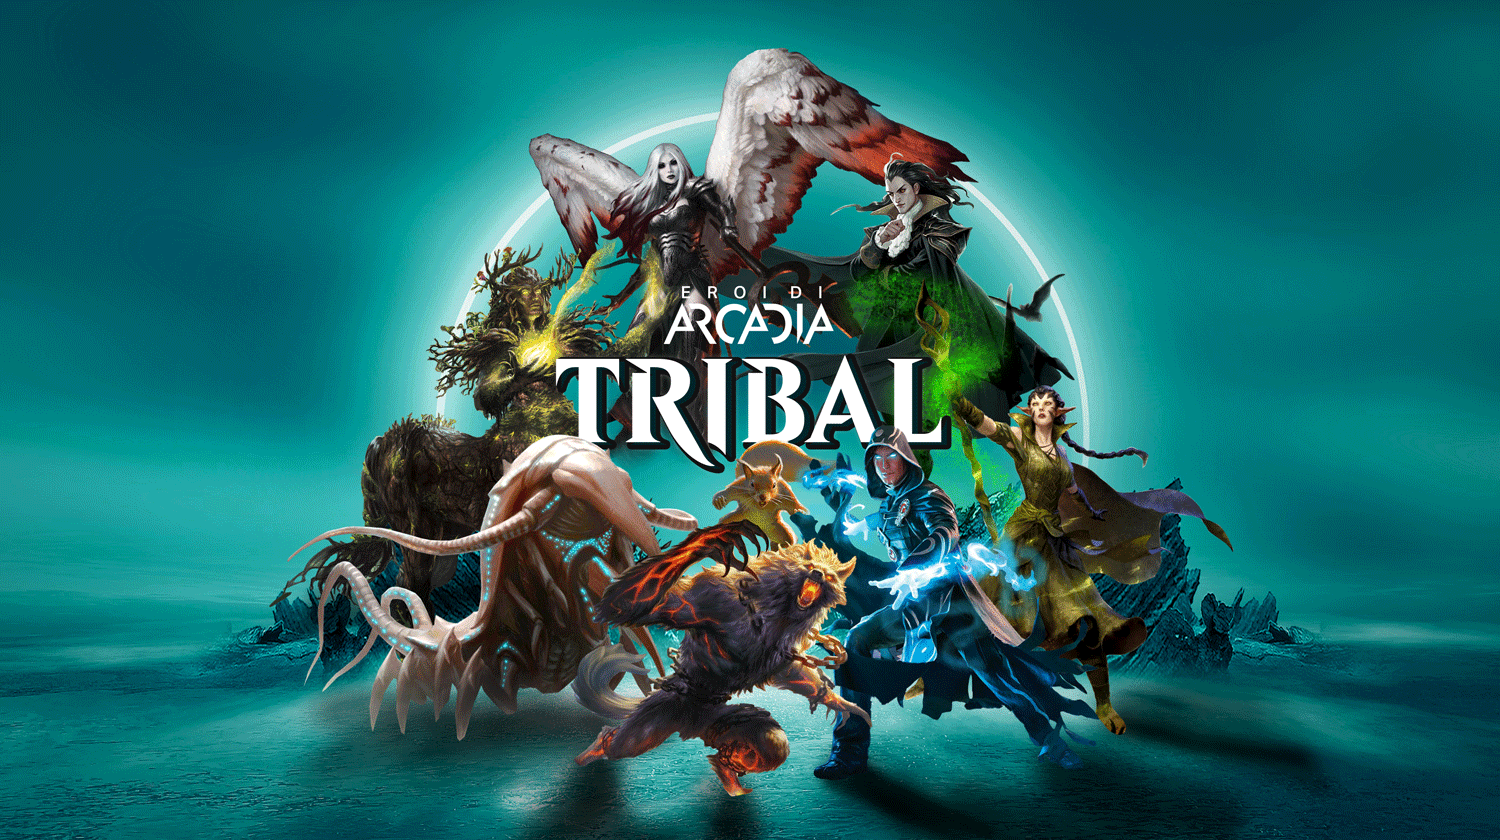 Tribal è il nuovo formato free per giocare a magic the gathering ideato dal team Eroi di Arcadia. Un formato con mazzi creature e con un limite al budget per la costruzione del mazzo. Divertimento puro alla portata di tutti, perfetto anche per neofiti